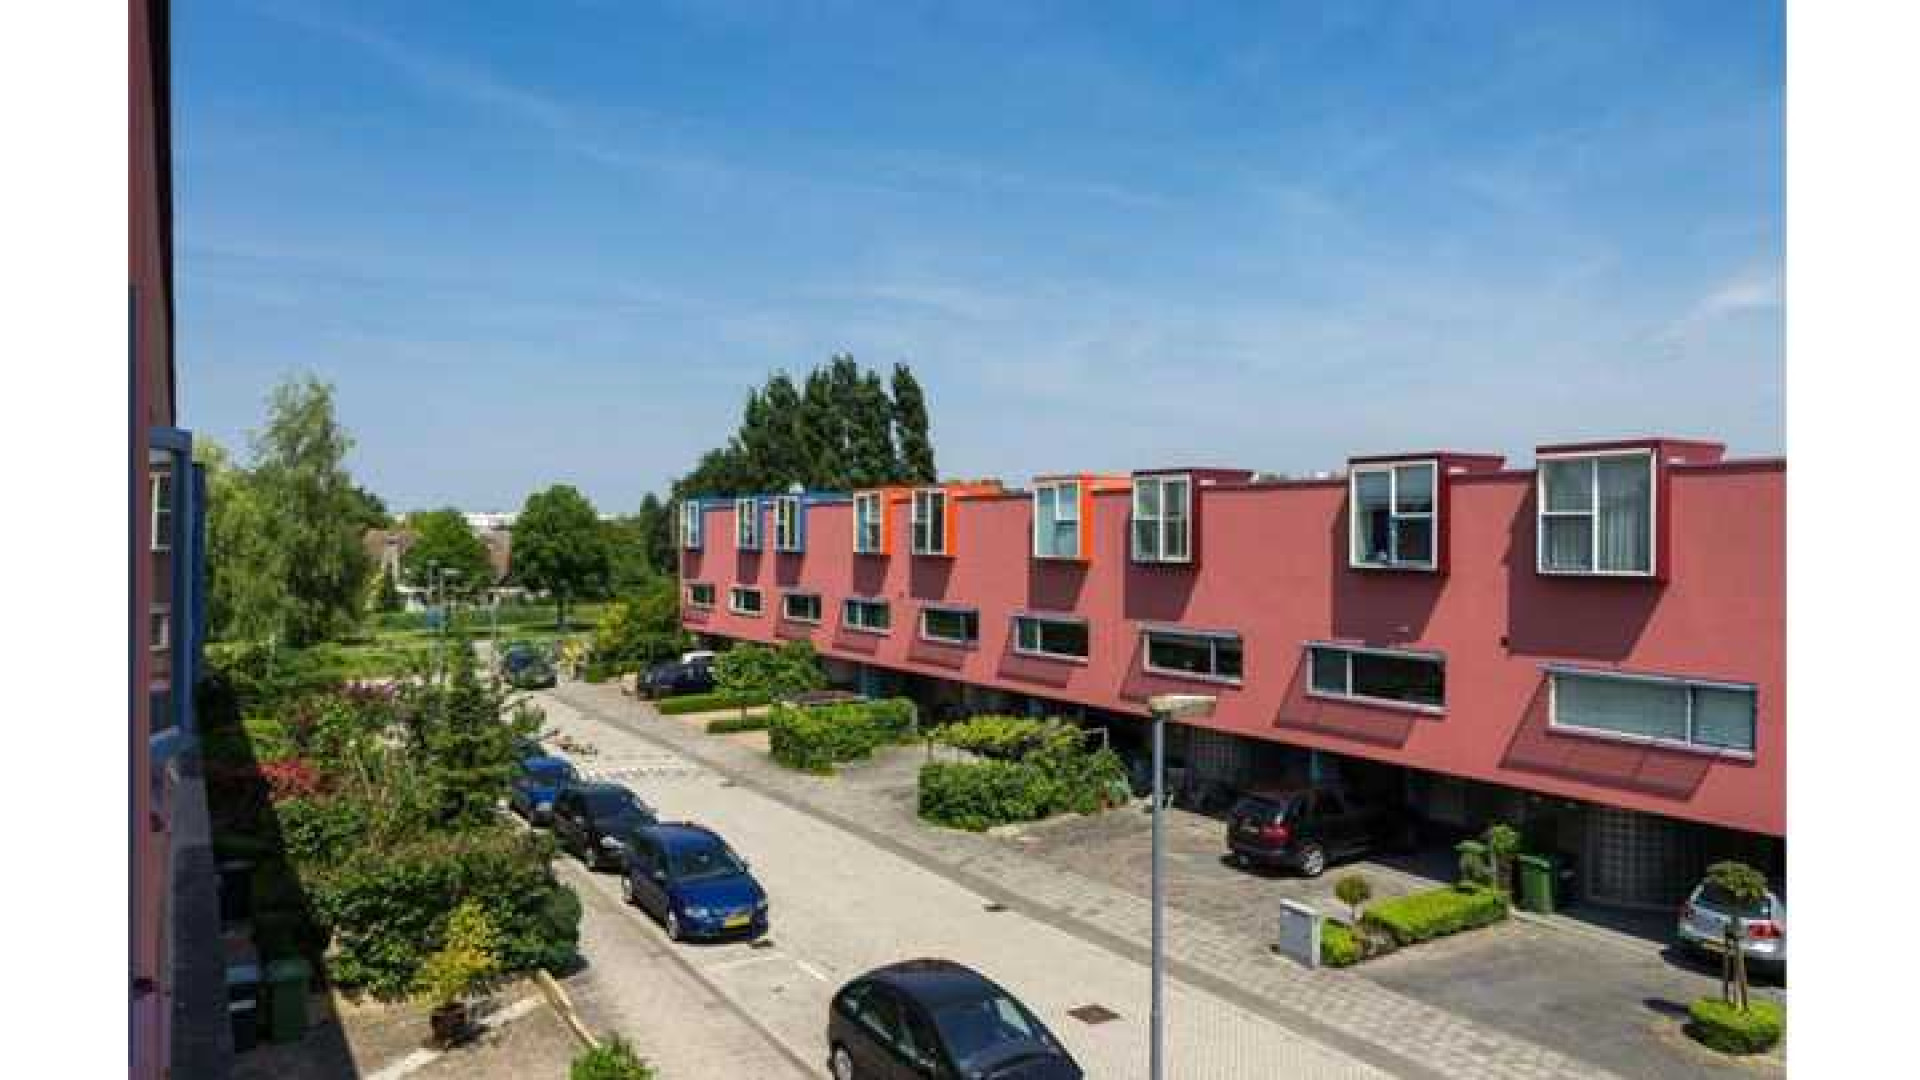 Robin van Persie koopt eengezinswoning in Rotterdam. Zie foto's